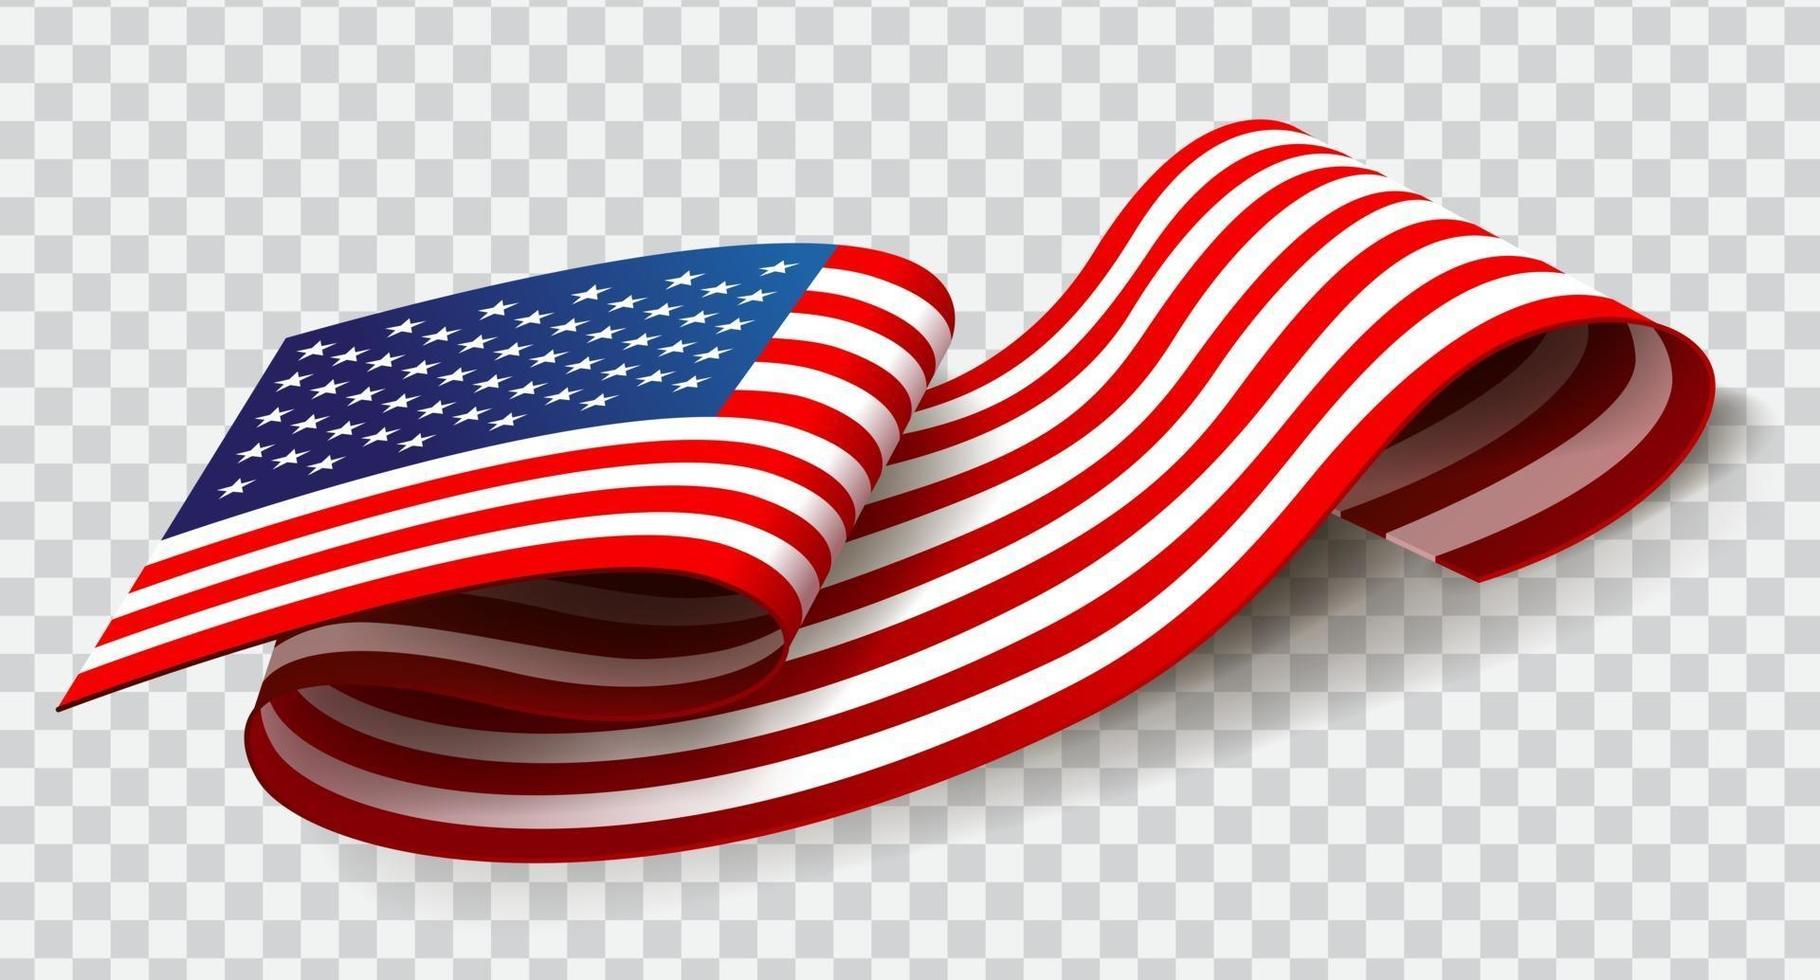 Estados Unidos de América ondeando la bandera sobre fondo transparente para el 4 de julio. vector